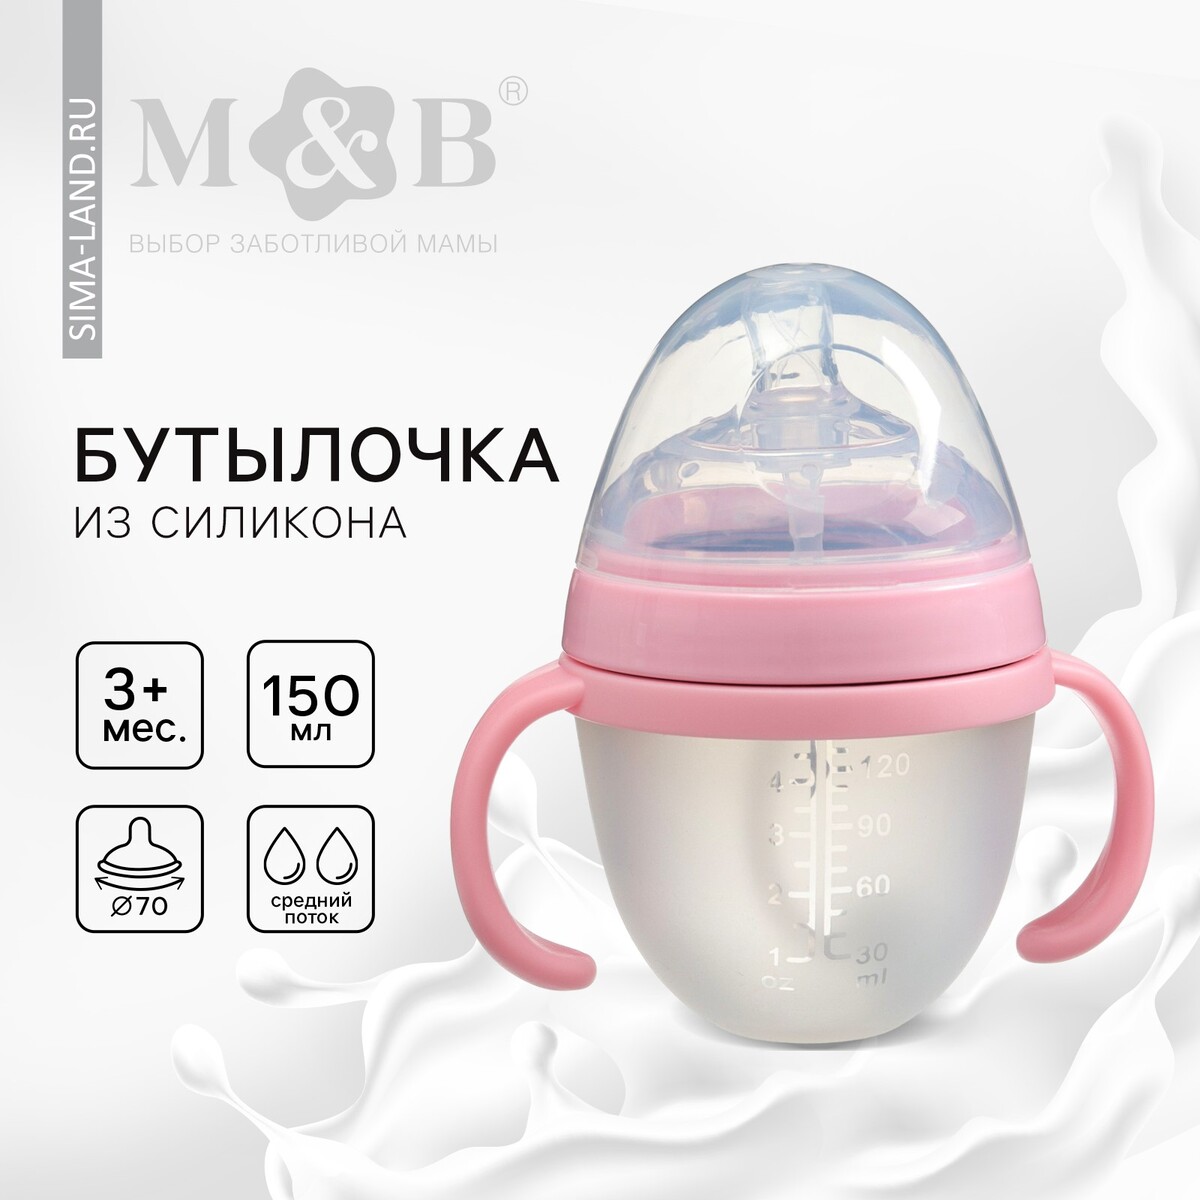 Бутылочка для кормления m&b, шг ø70мм, 150мл., с ручками, силиконовая колба, цвет розовый